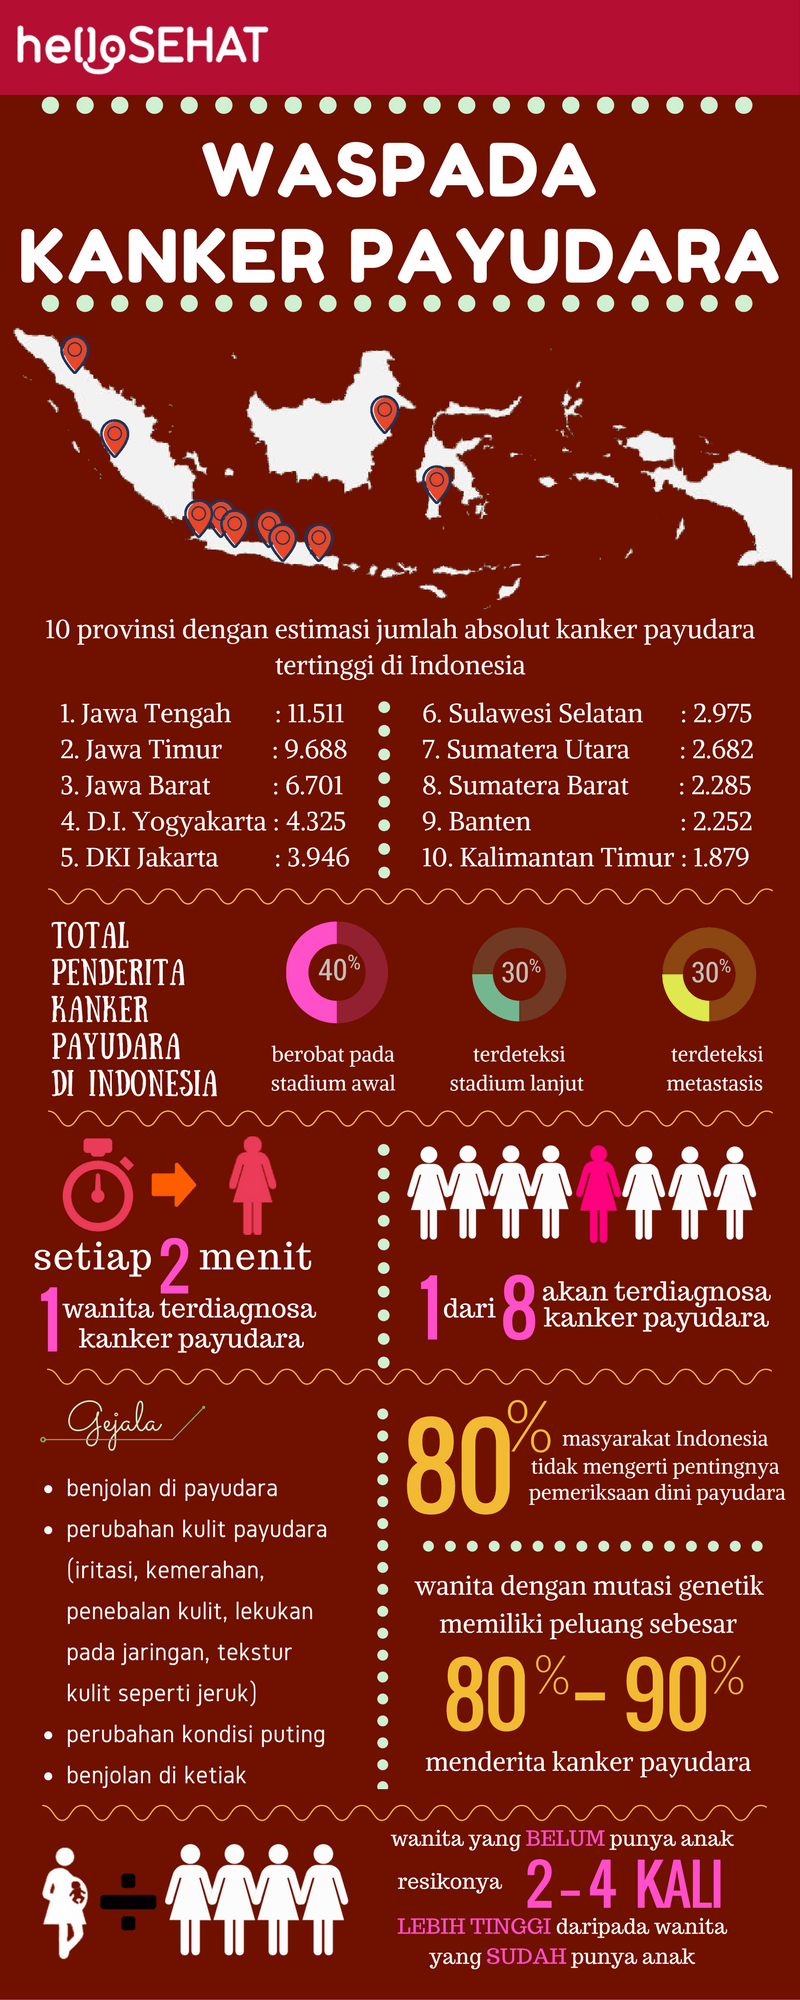 हेलो स्वस्थ स्तन कैंसर इंडोनेशिया में इन्फोग्राफिक